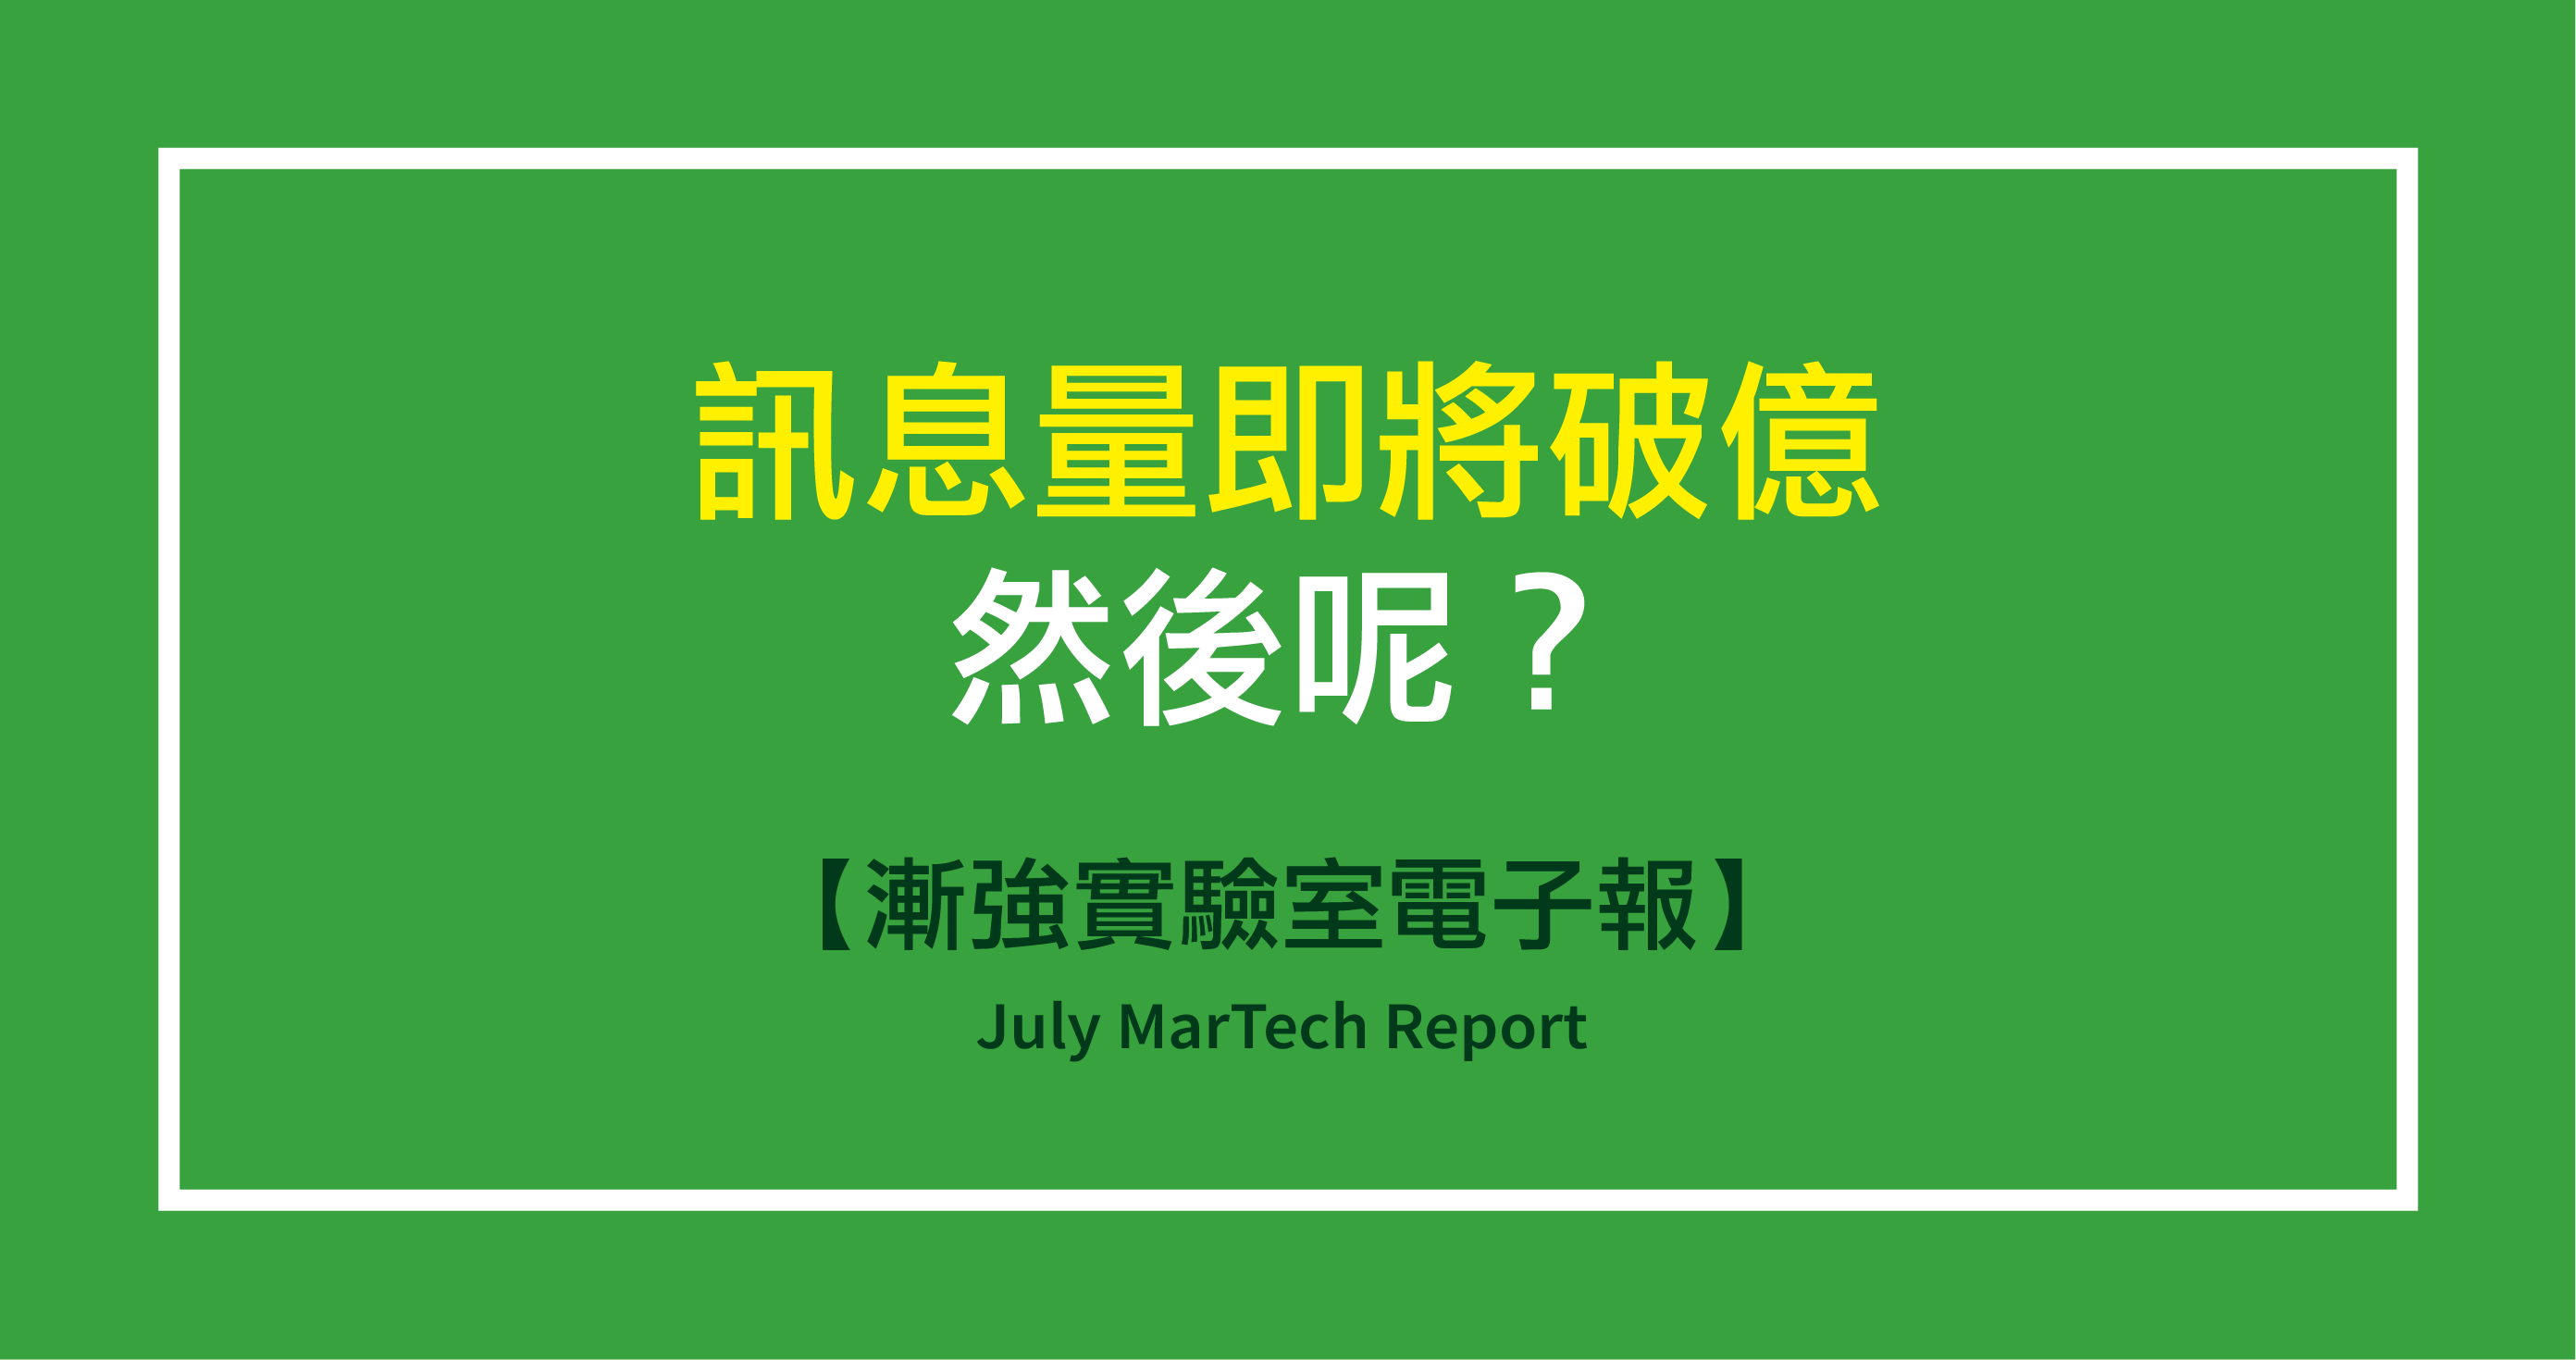 漸強實驗室電子報 July Martech Report 2020 上半年透過漸強實驗室後台發送的訊息量 單月近乎破億 By Tina Chang 漸強實驗室